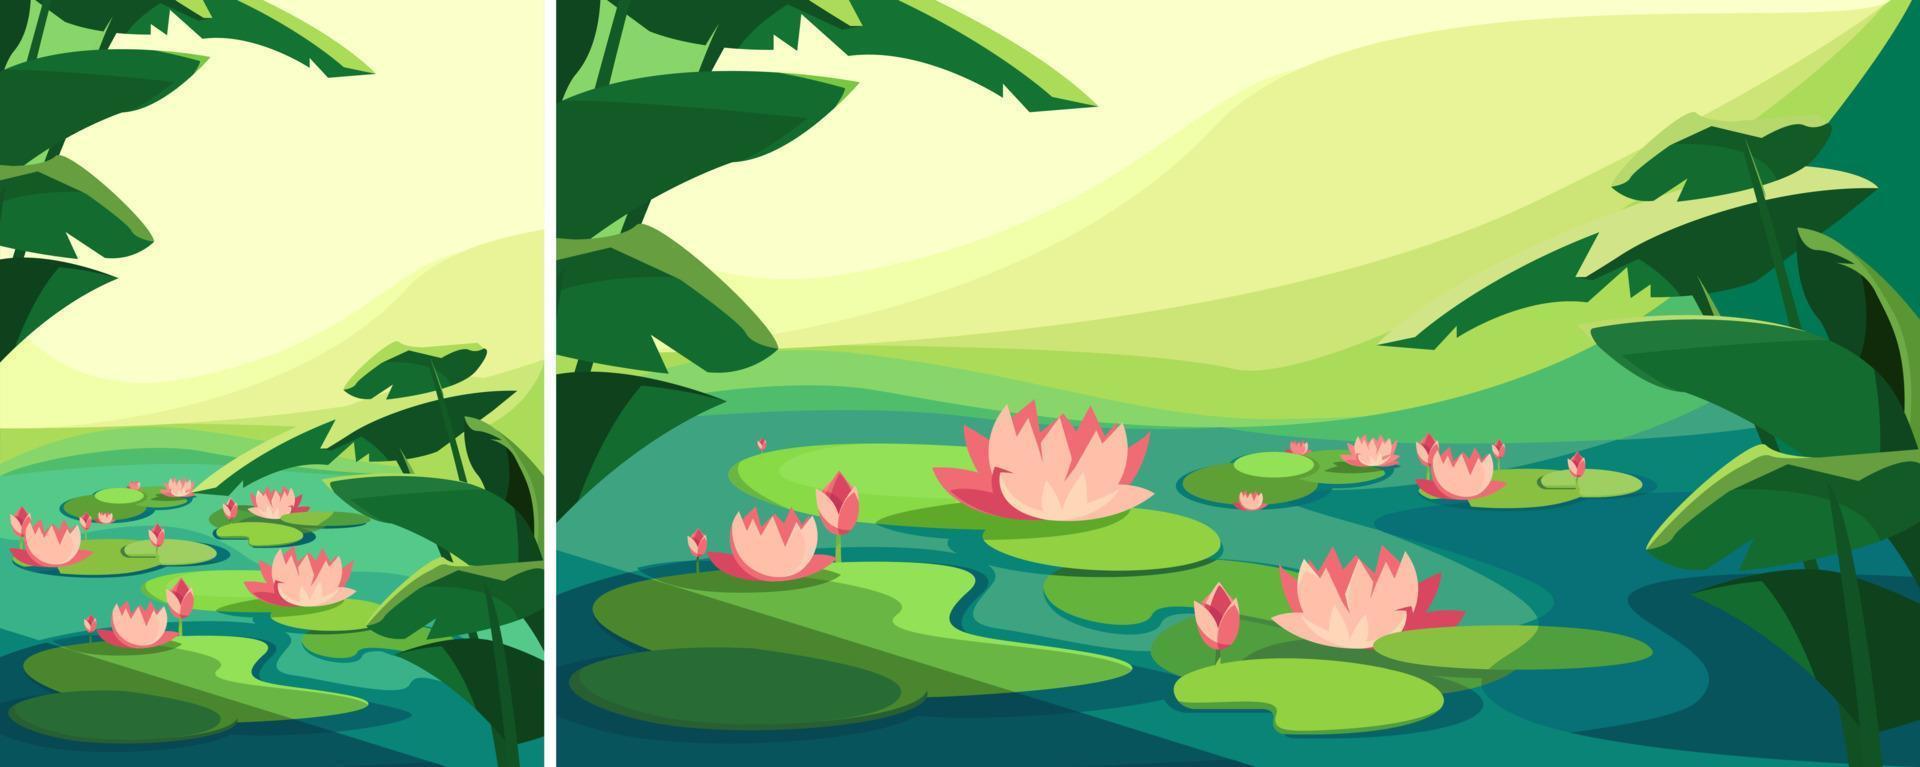 Landschaft mit blühenden Lotusblumen. Naturlandschaften in verschiedenen Formaten. vektor